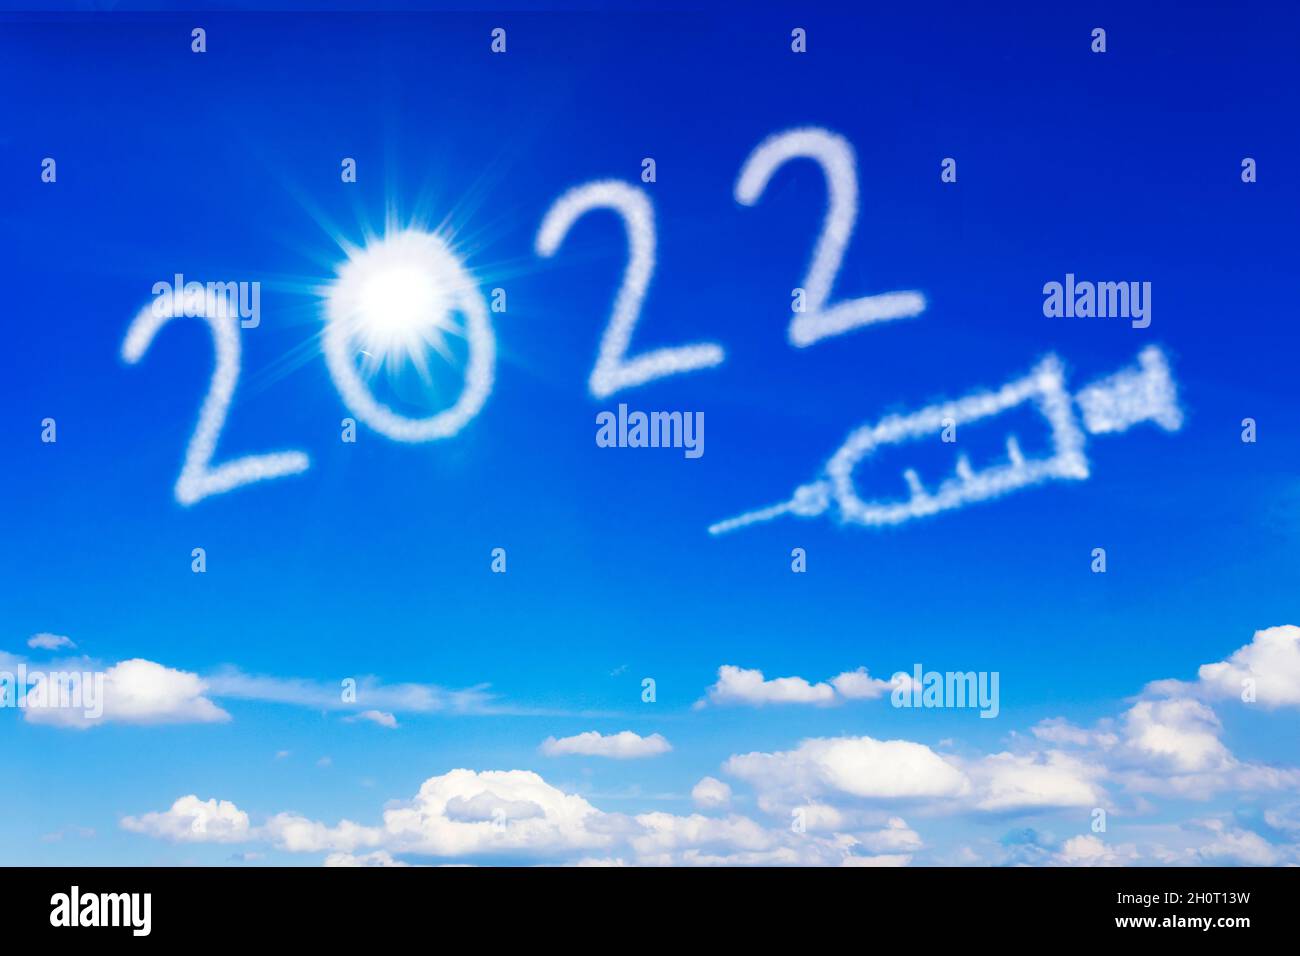 Concept de bonne année.Soleil éclatant, numéro 2022 et icône de seringue sur ciel bleu, symbolisant la fin de la pandémie de covid. Banque D'Images